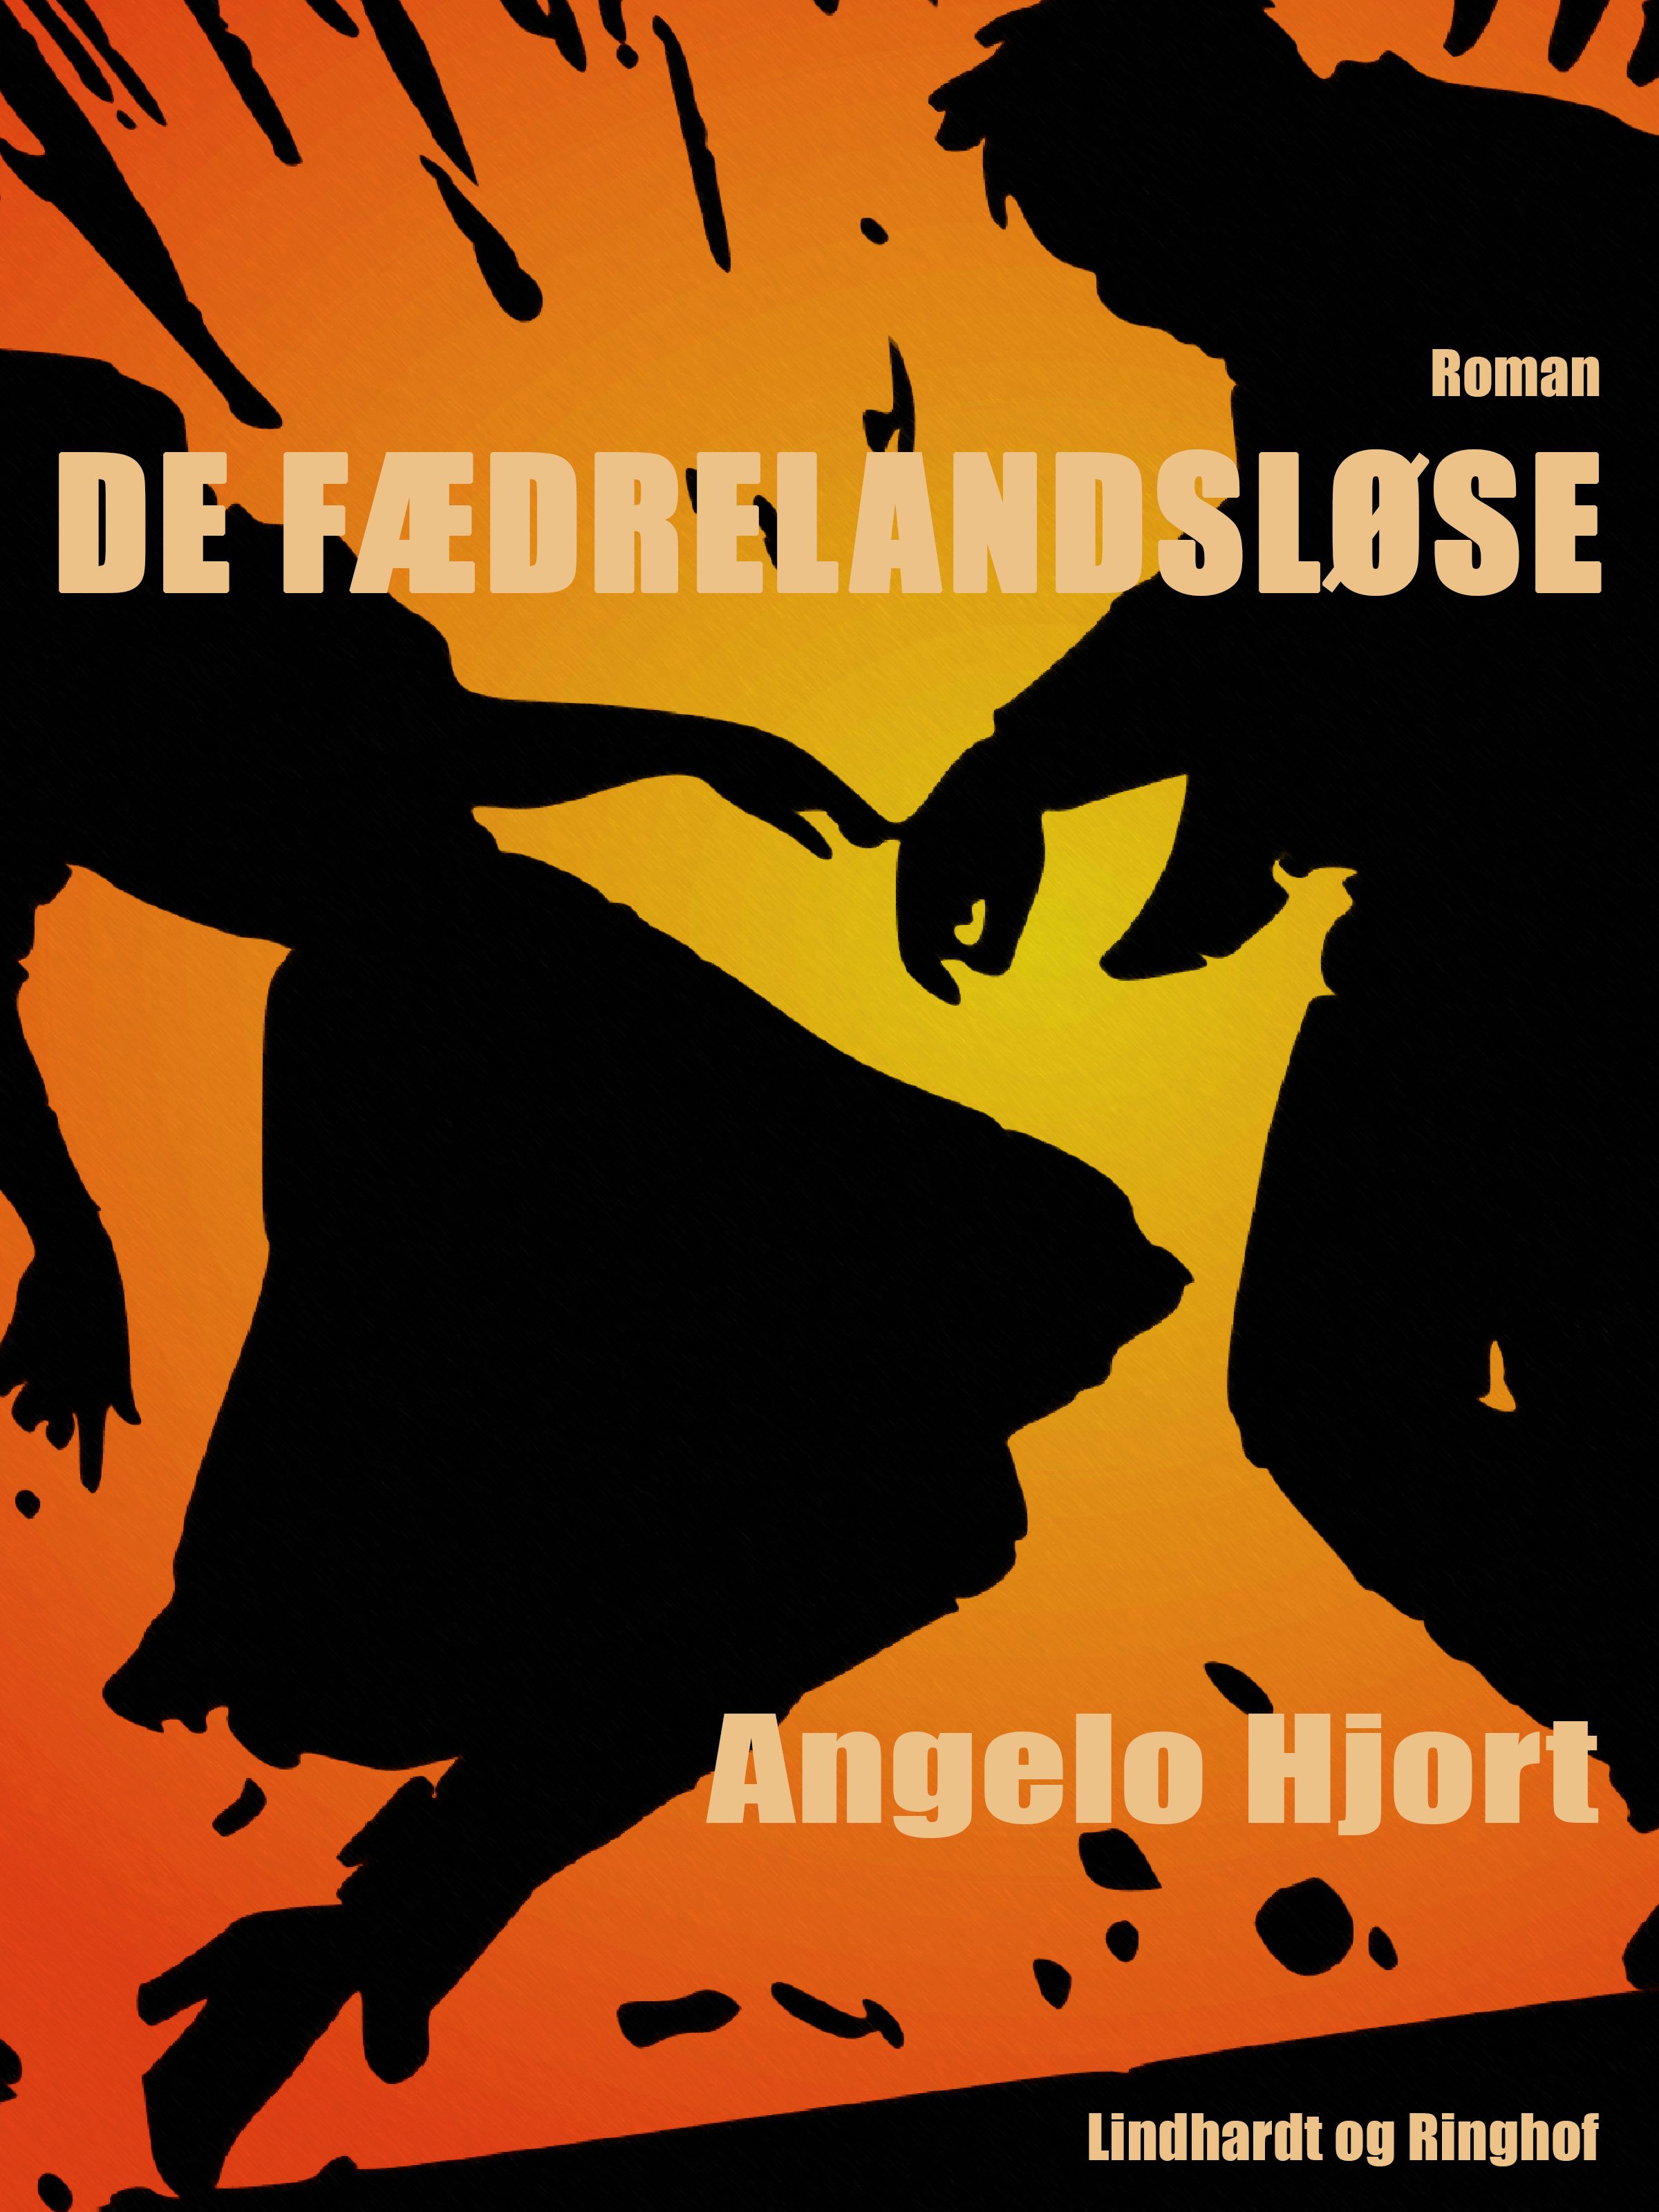 De fædrelandsløse, ljudbok av Angelo Hjort